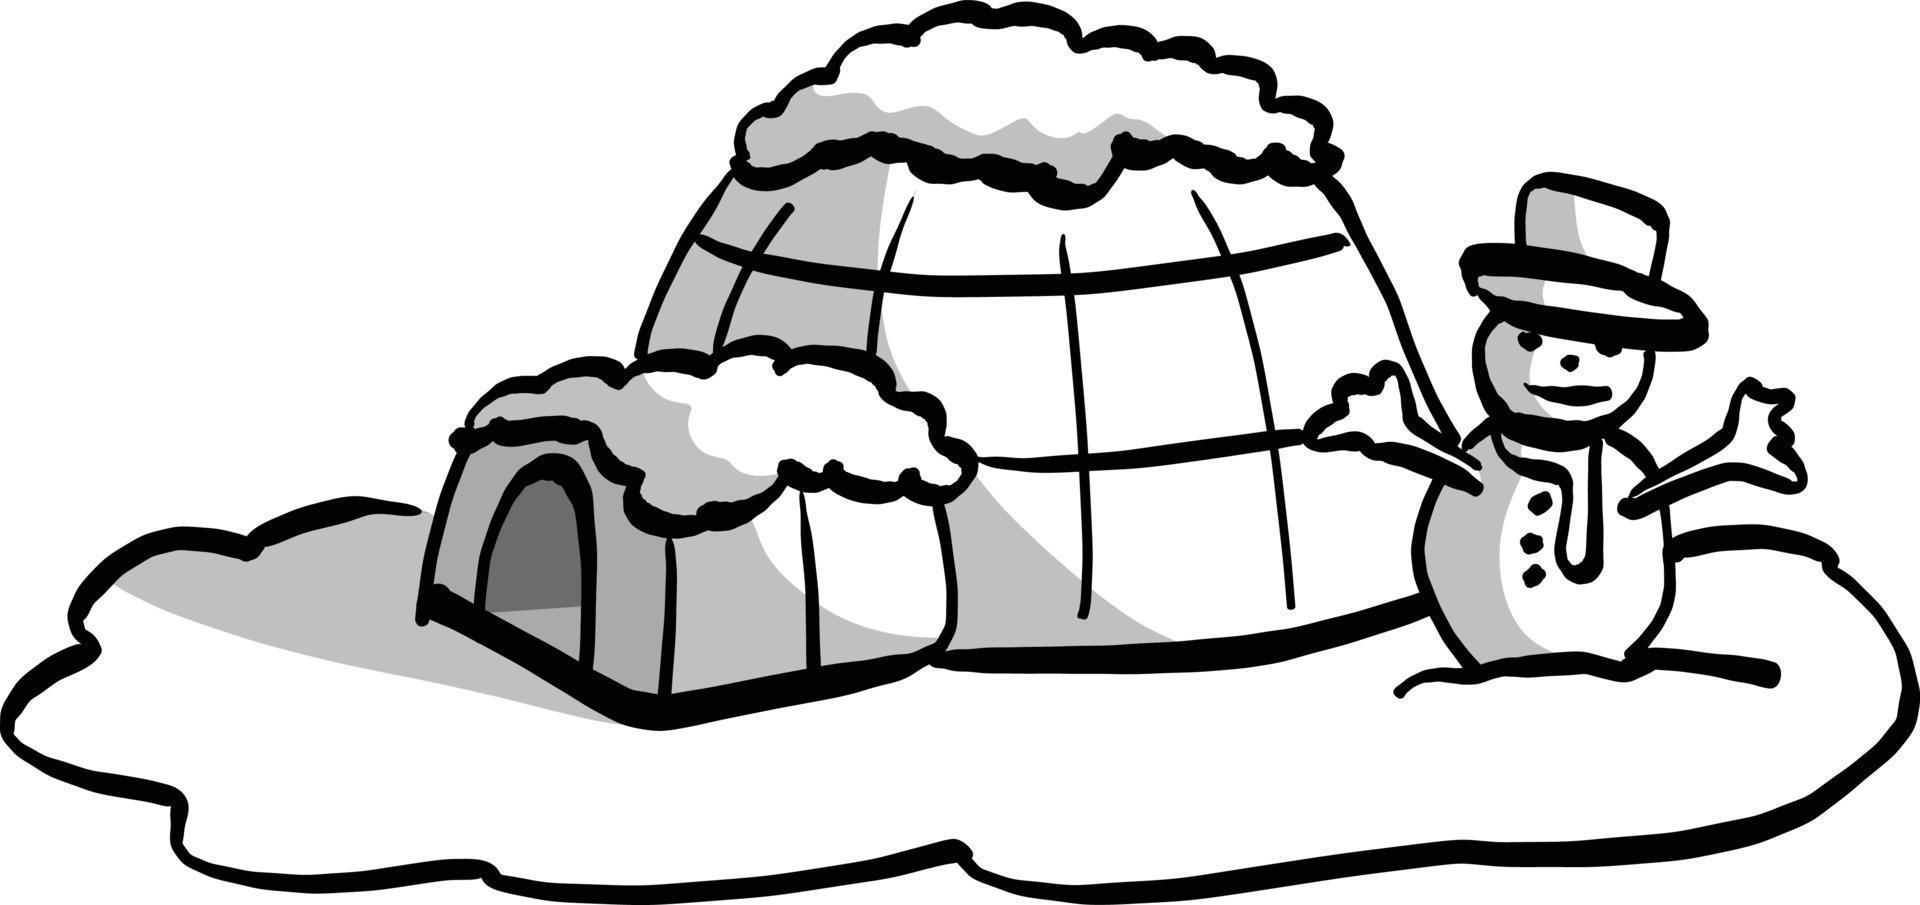 igloo med snögubbe vektor illustration